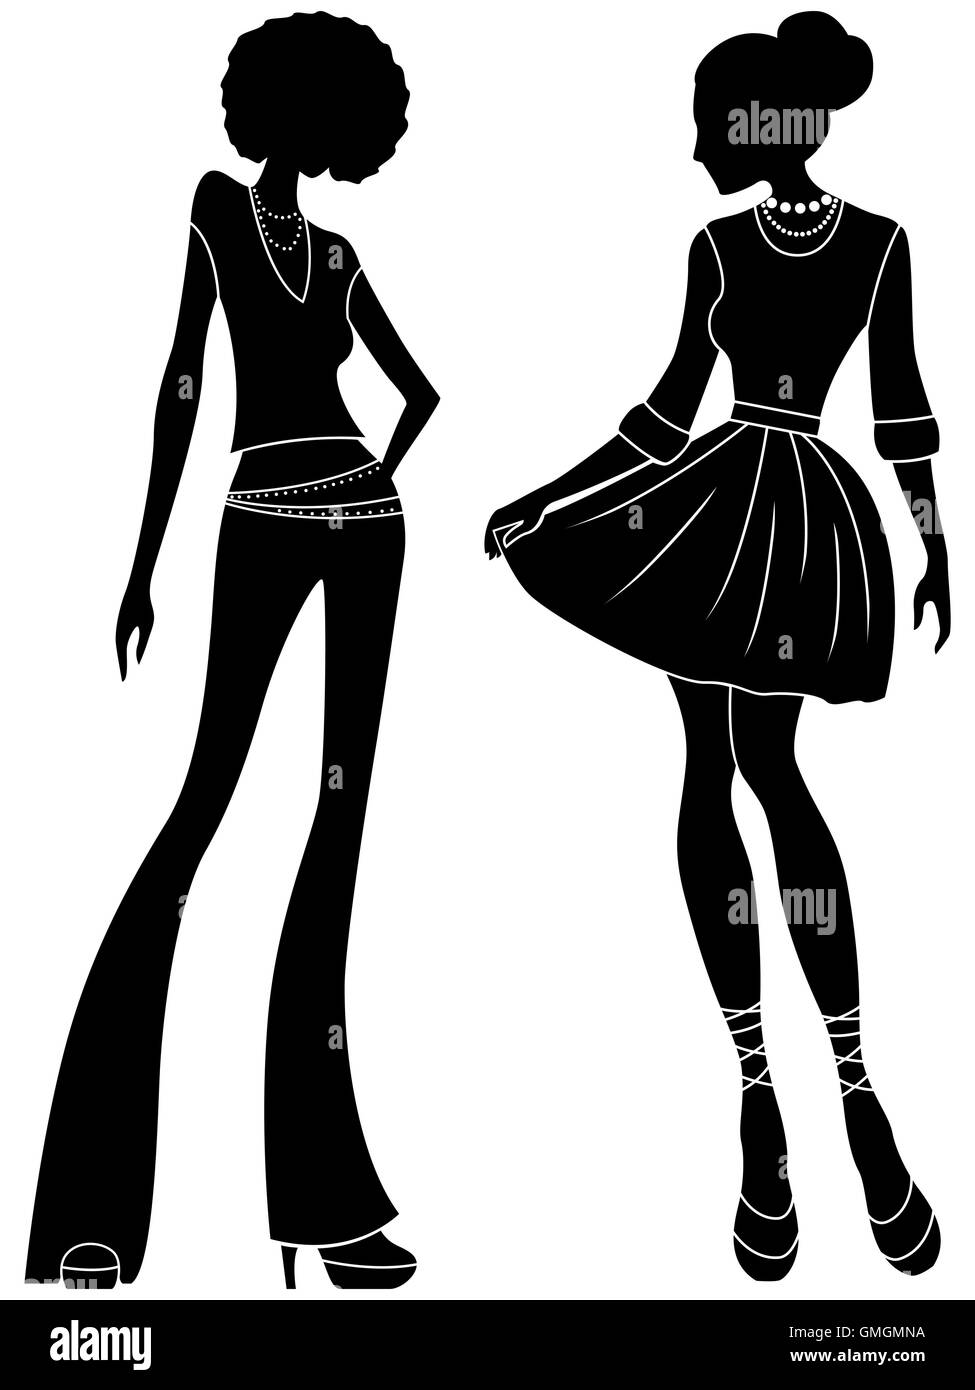 Attraktive schlanke Damen schwarze Schablone Silhouetten zu abstrahieren, von hand Zeichnung stilisierte Vektor-illustration Stock Vektor